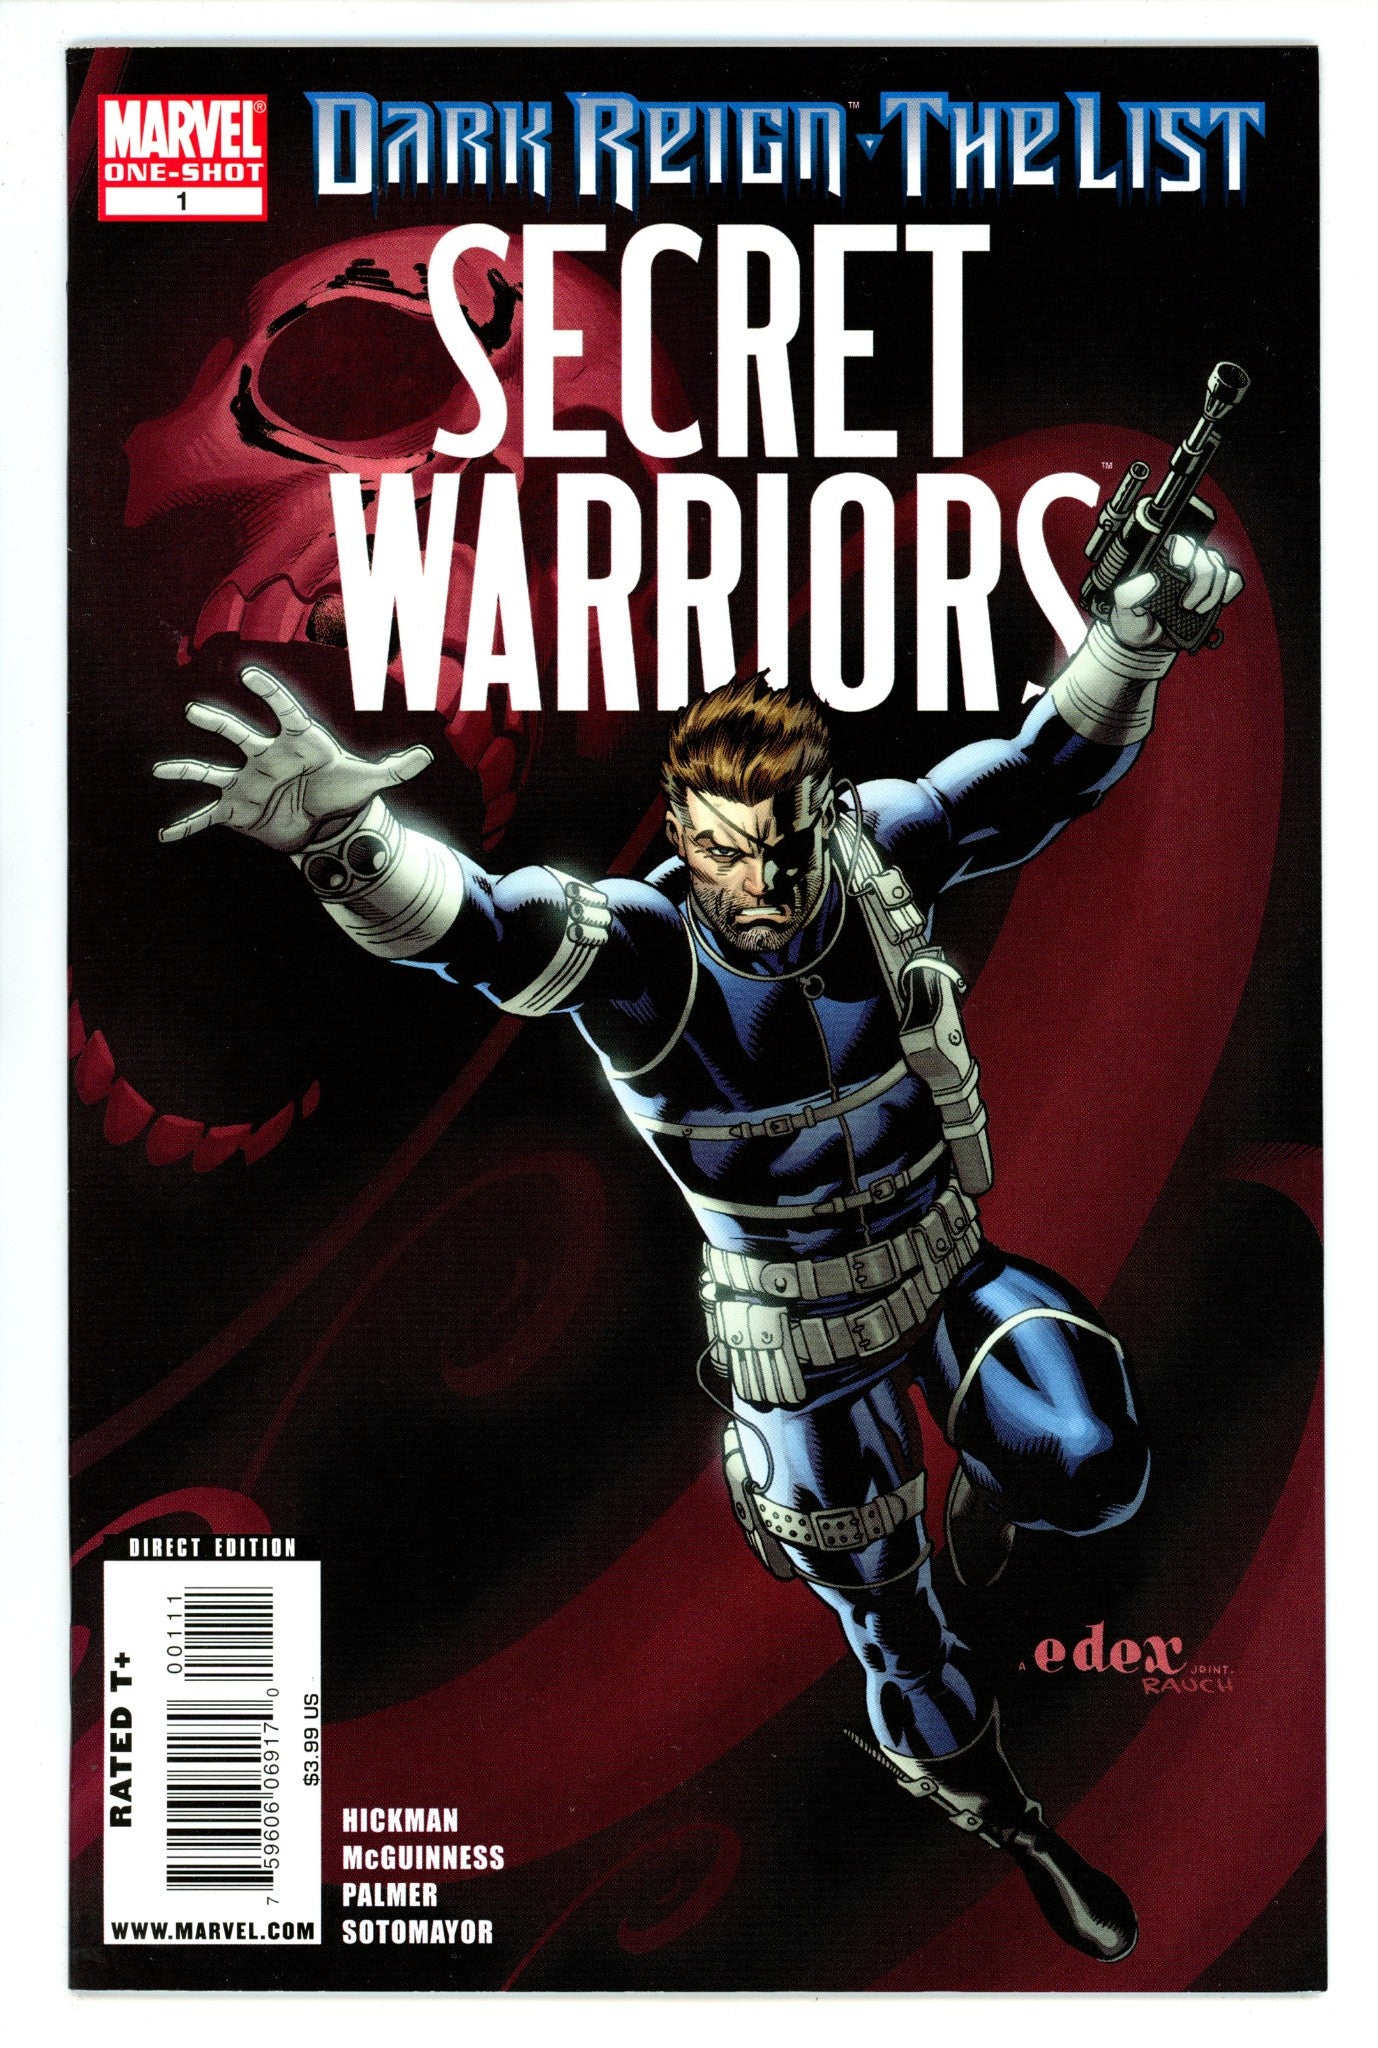 Dark Reign: The List - Secret Warriors One-Shot 1 High Grade (2009) 